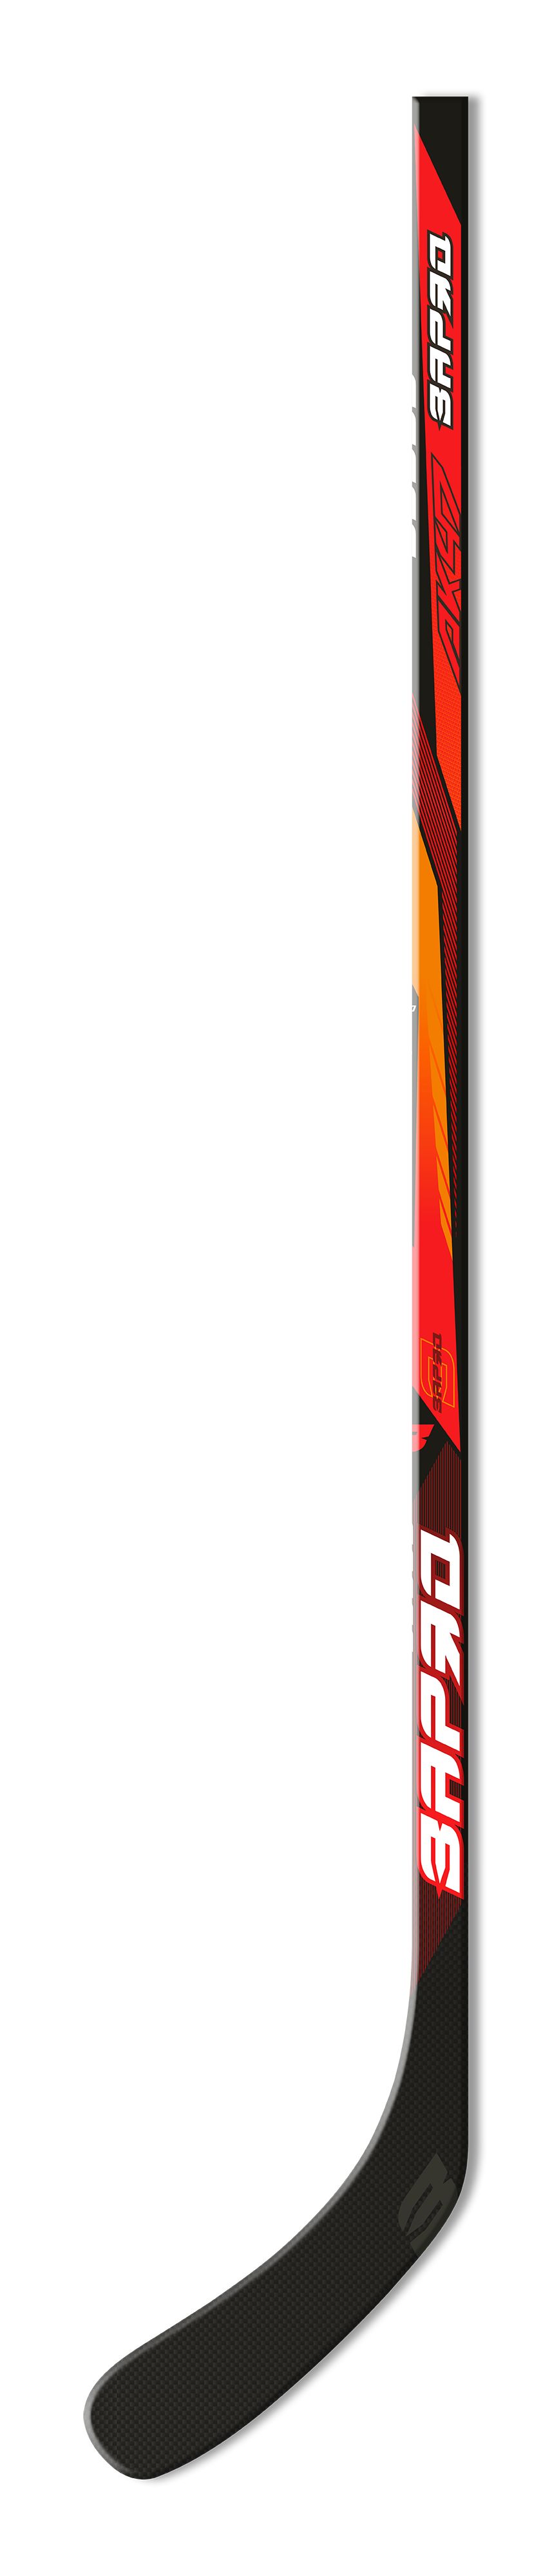 Клюшка ЗАРЯД Hockey Stick, левый хват, AK47Team-L40-52